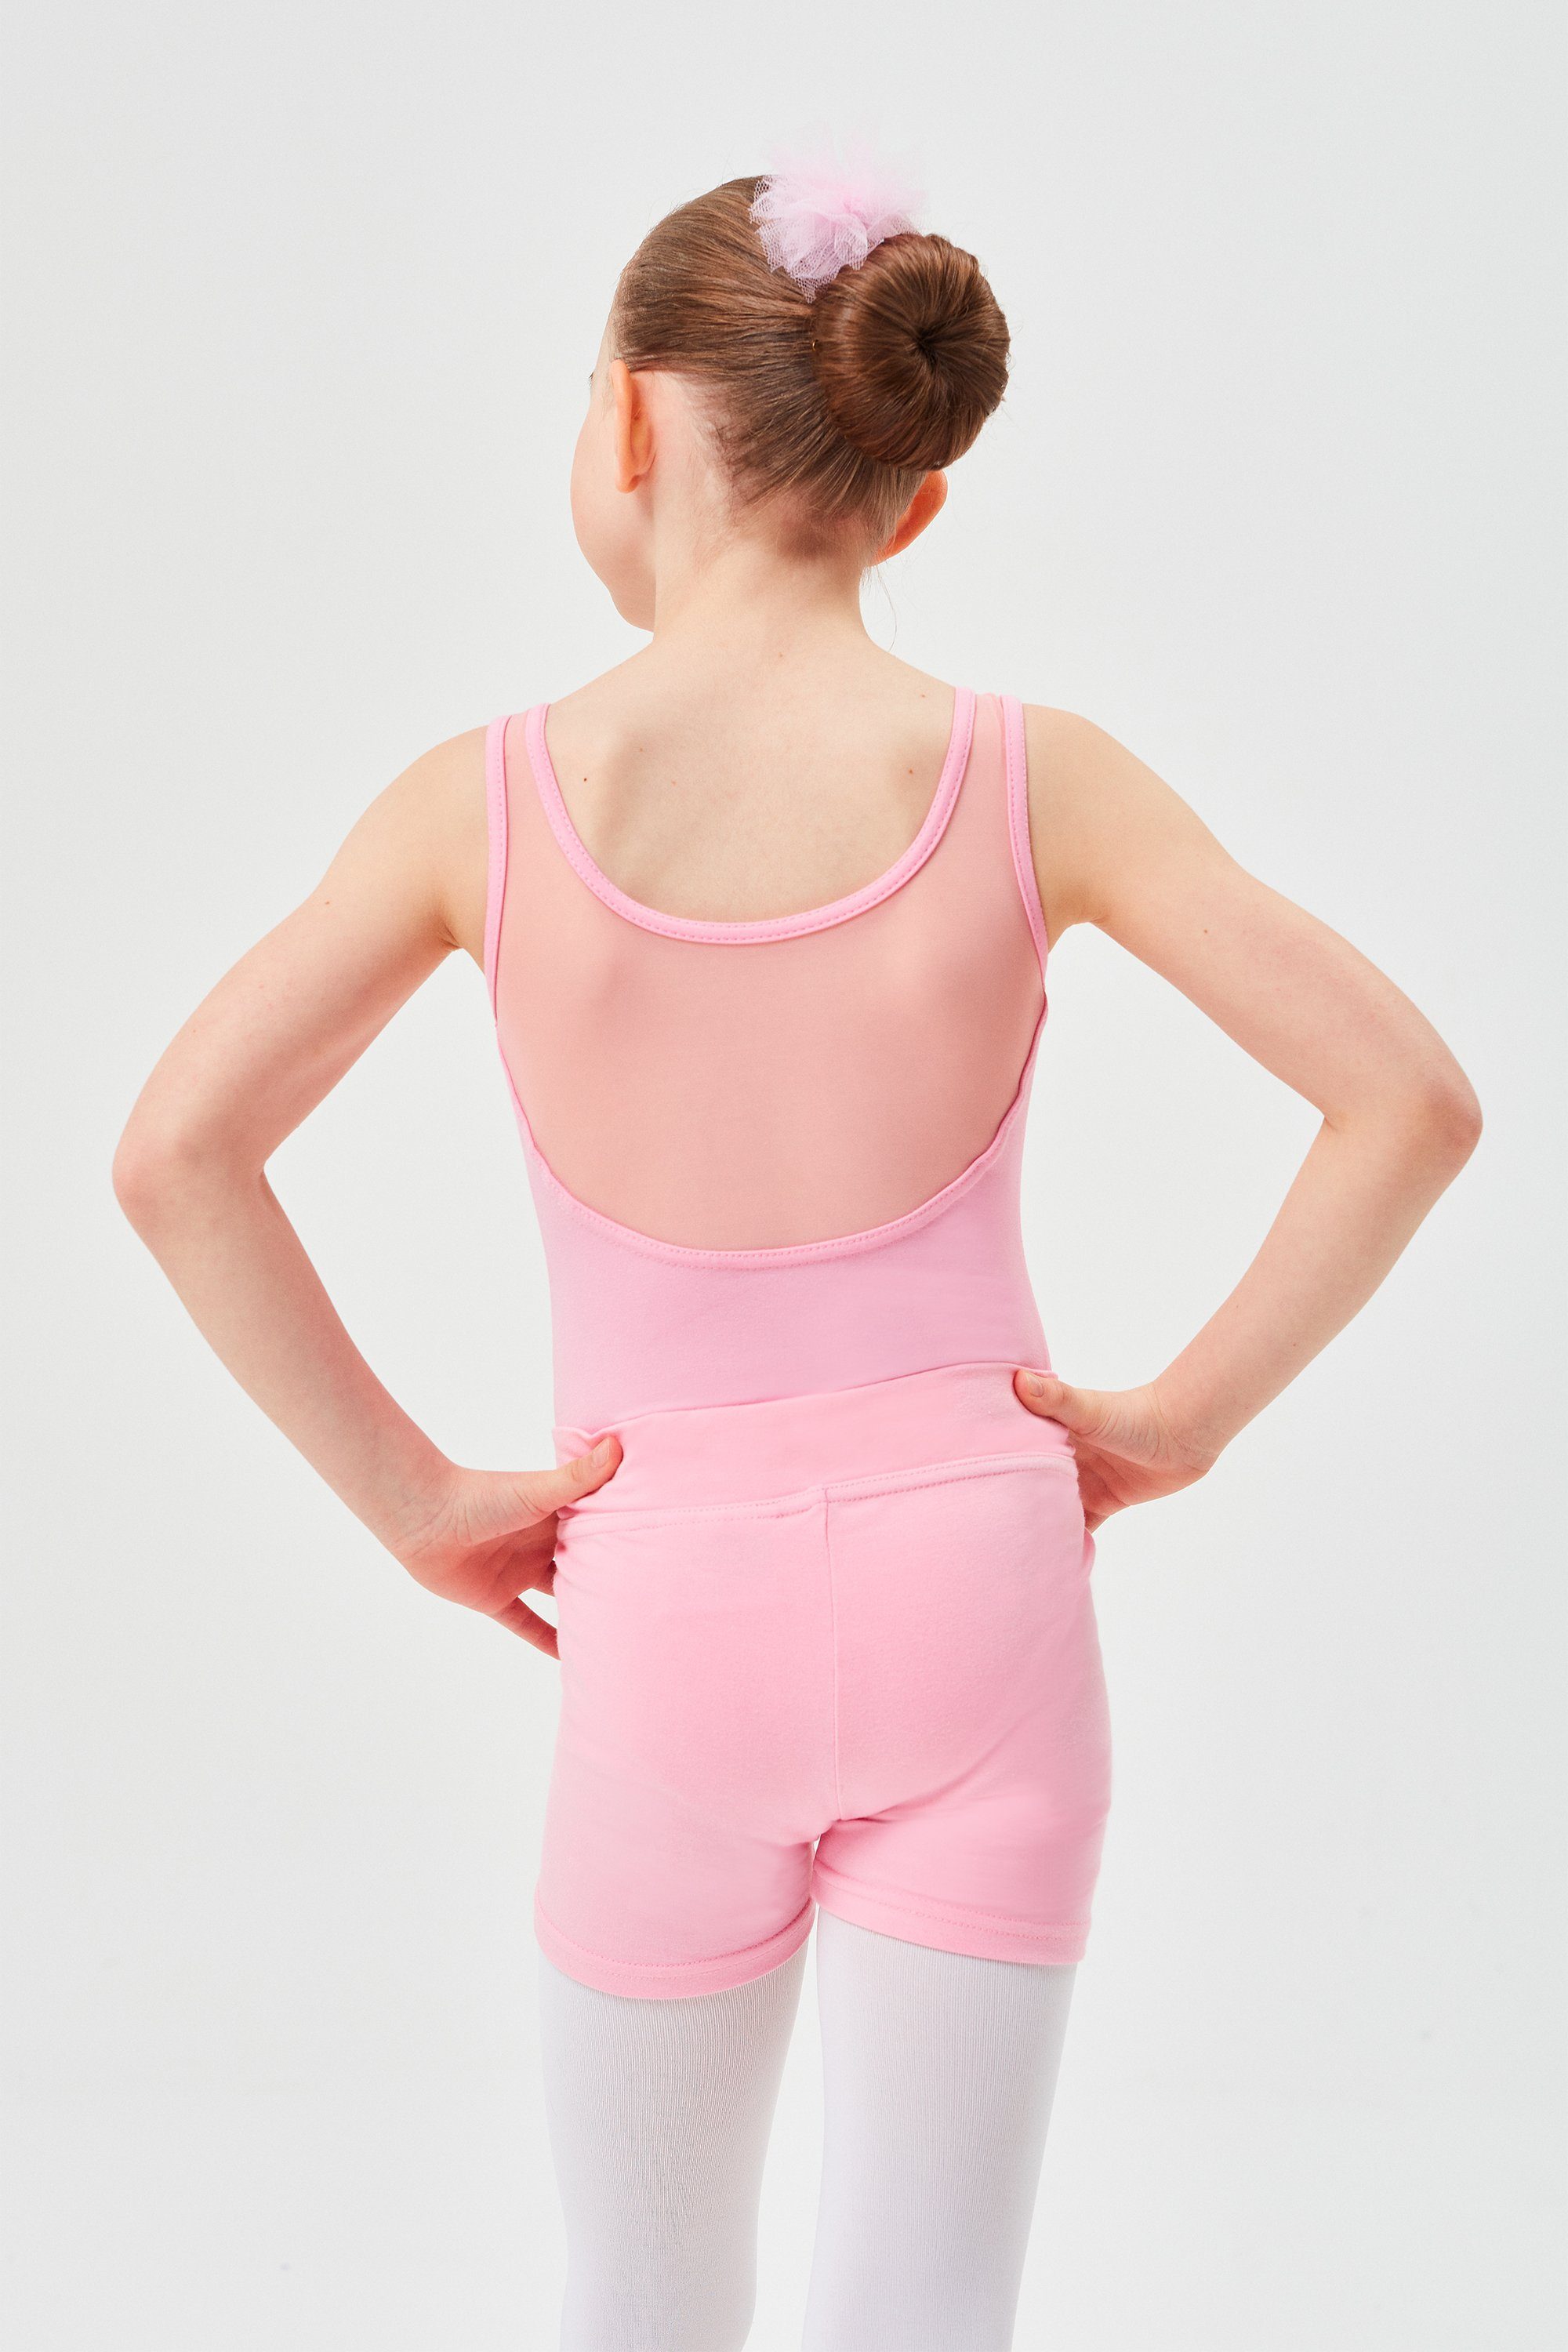 kurze Shorts weicher Baumwolle für Abby aus Mädchen Dancehose Hose rosa Ballett tanzmuster